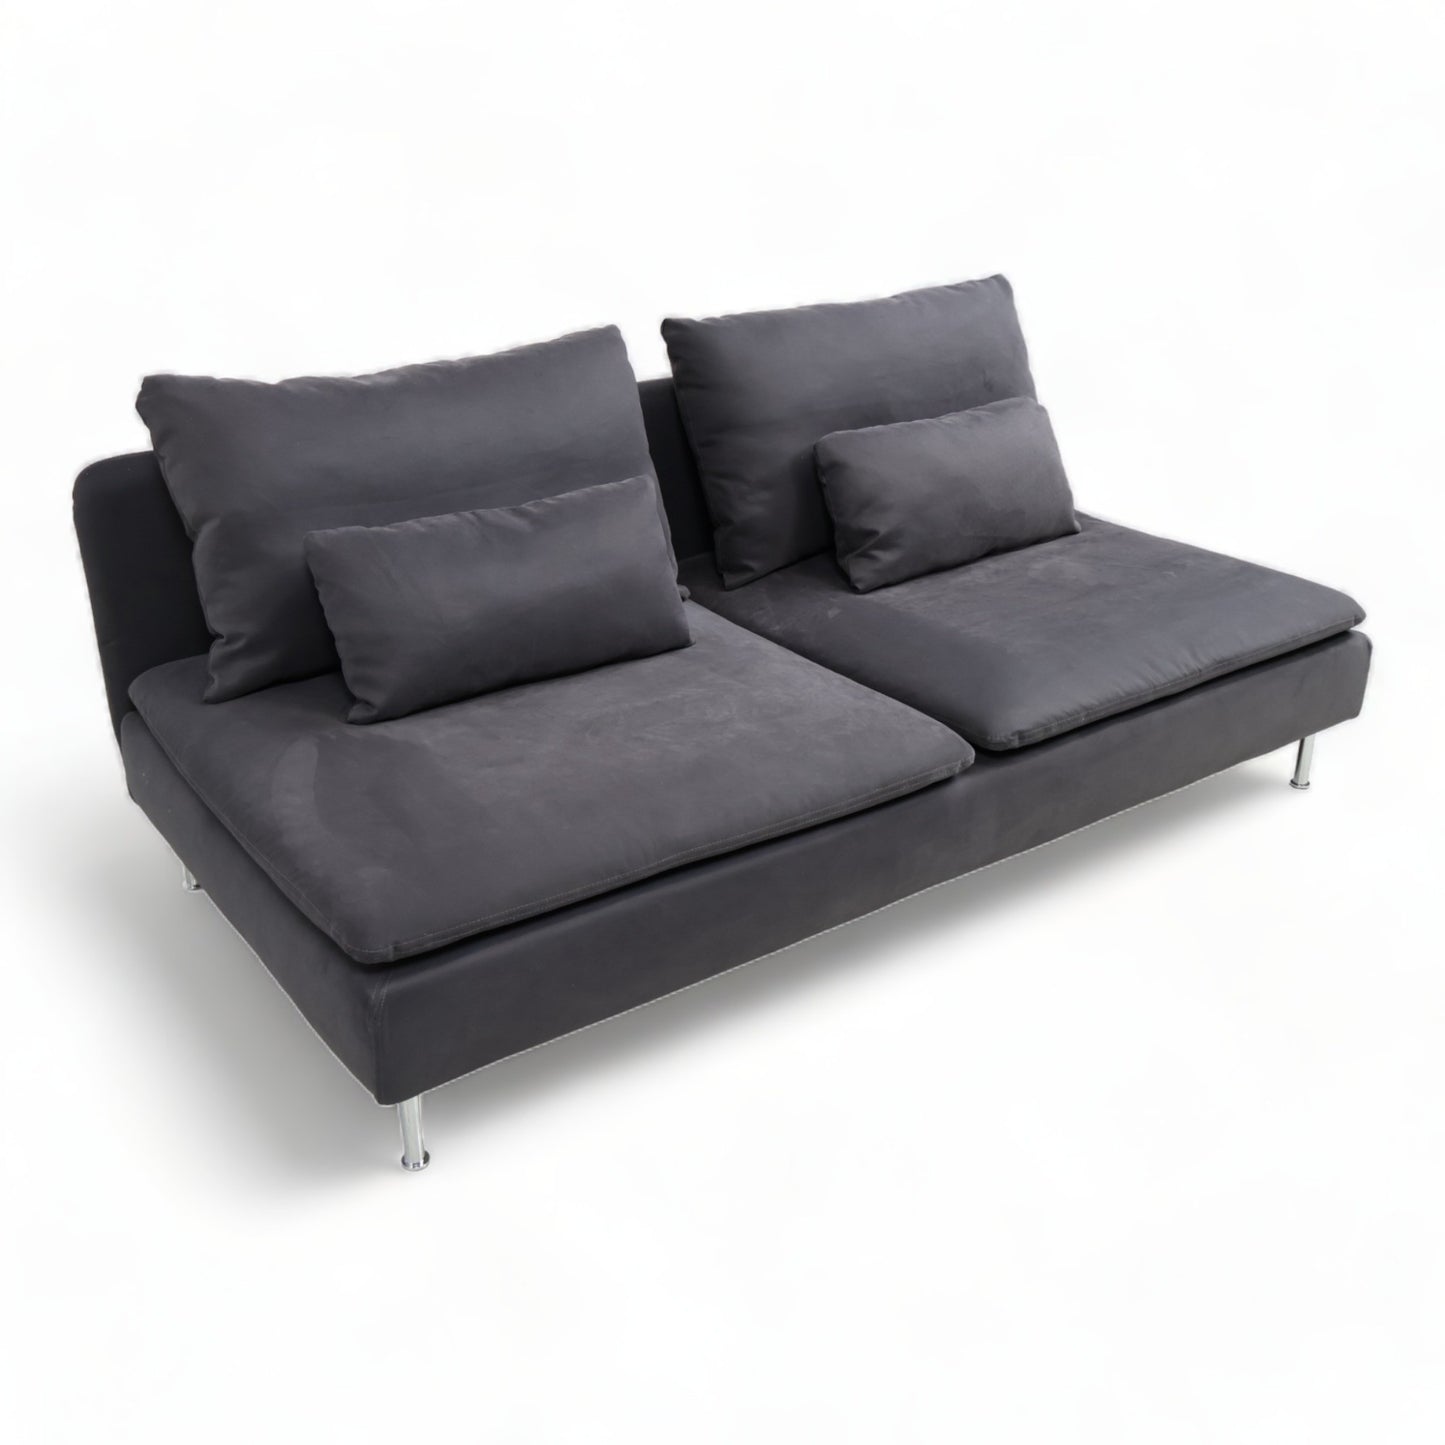 Nyrenset | Mørk grå IKEA Söderhamn 2-seter sofa